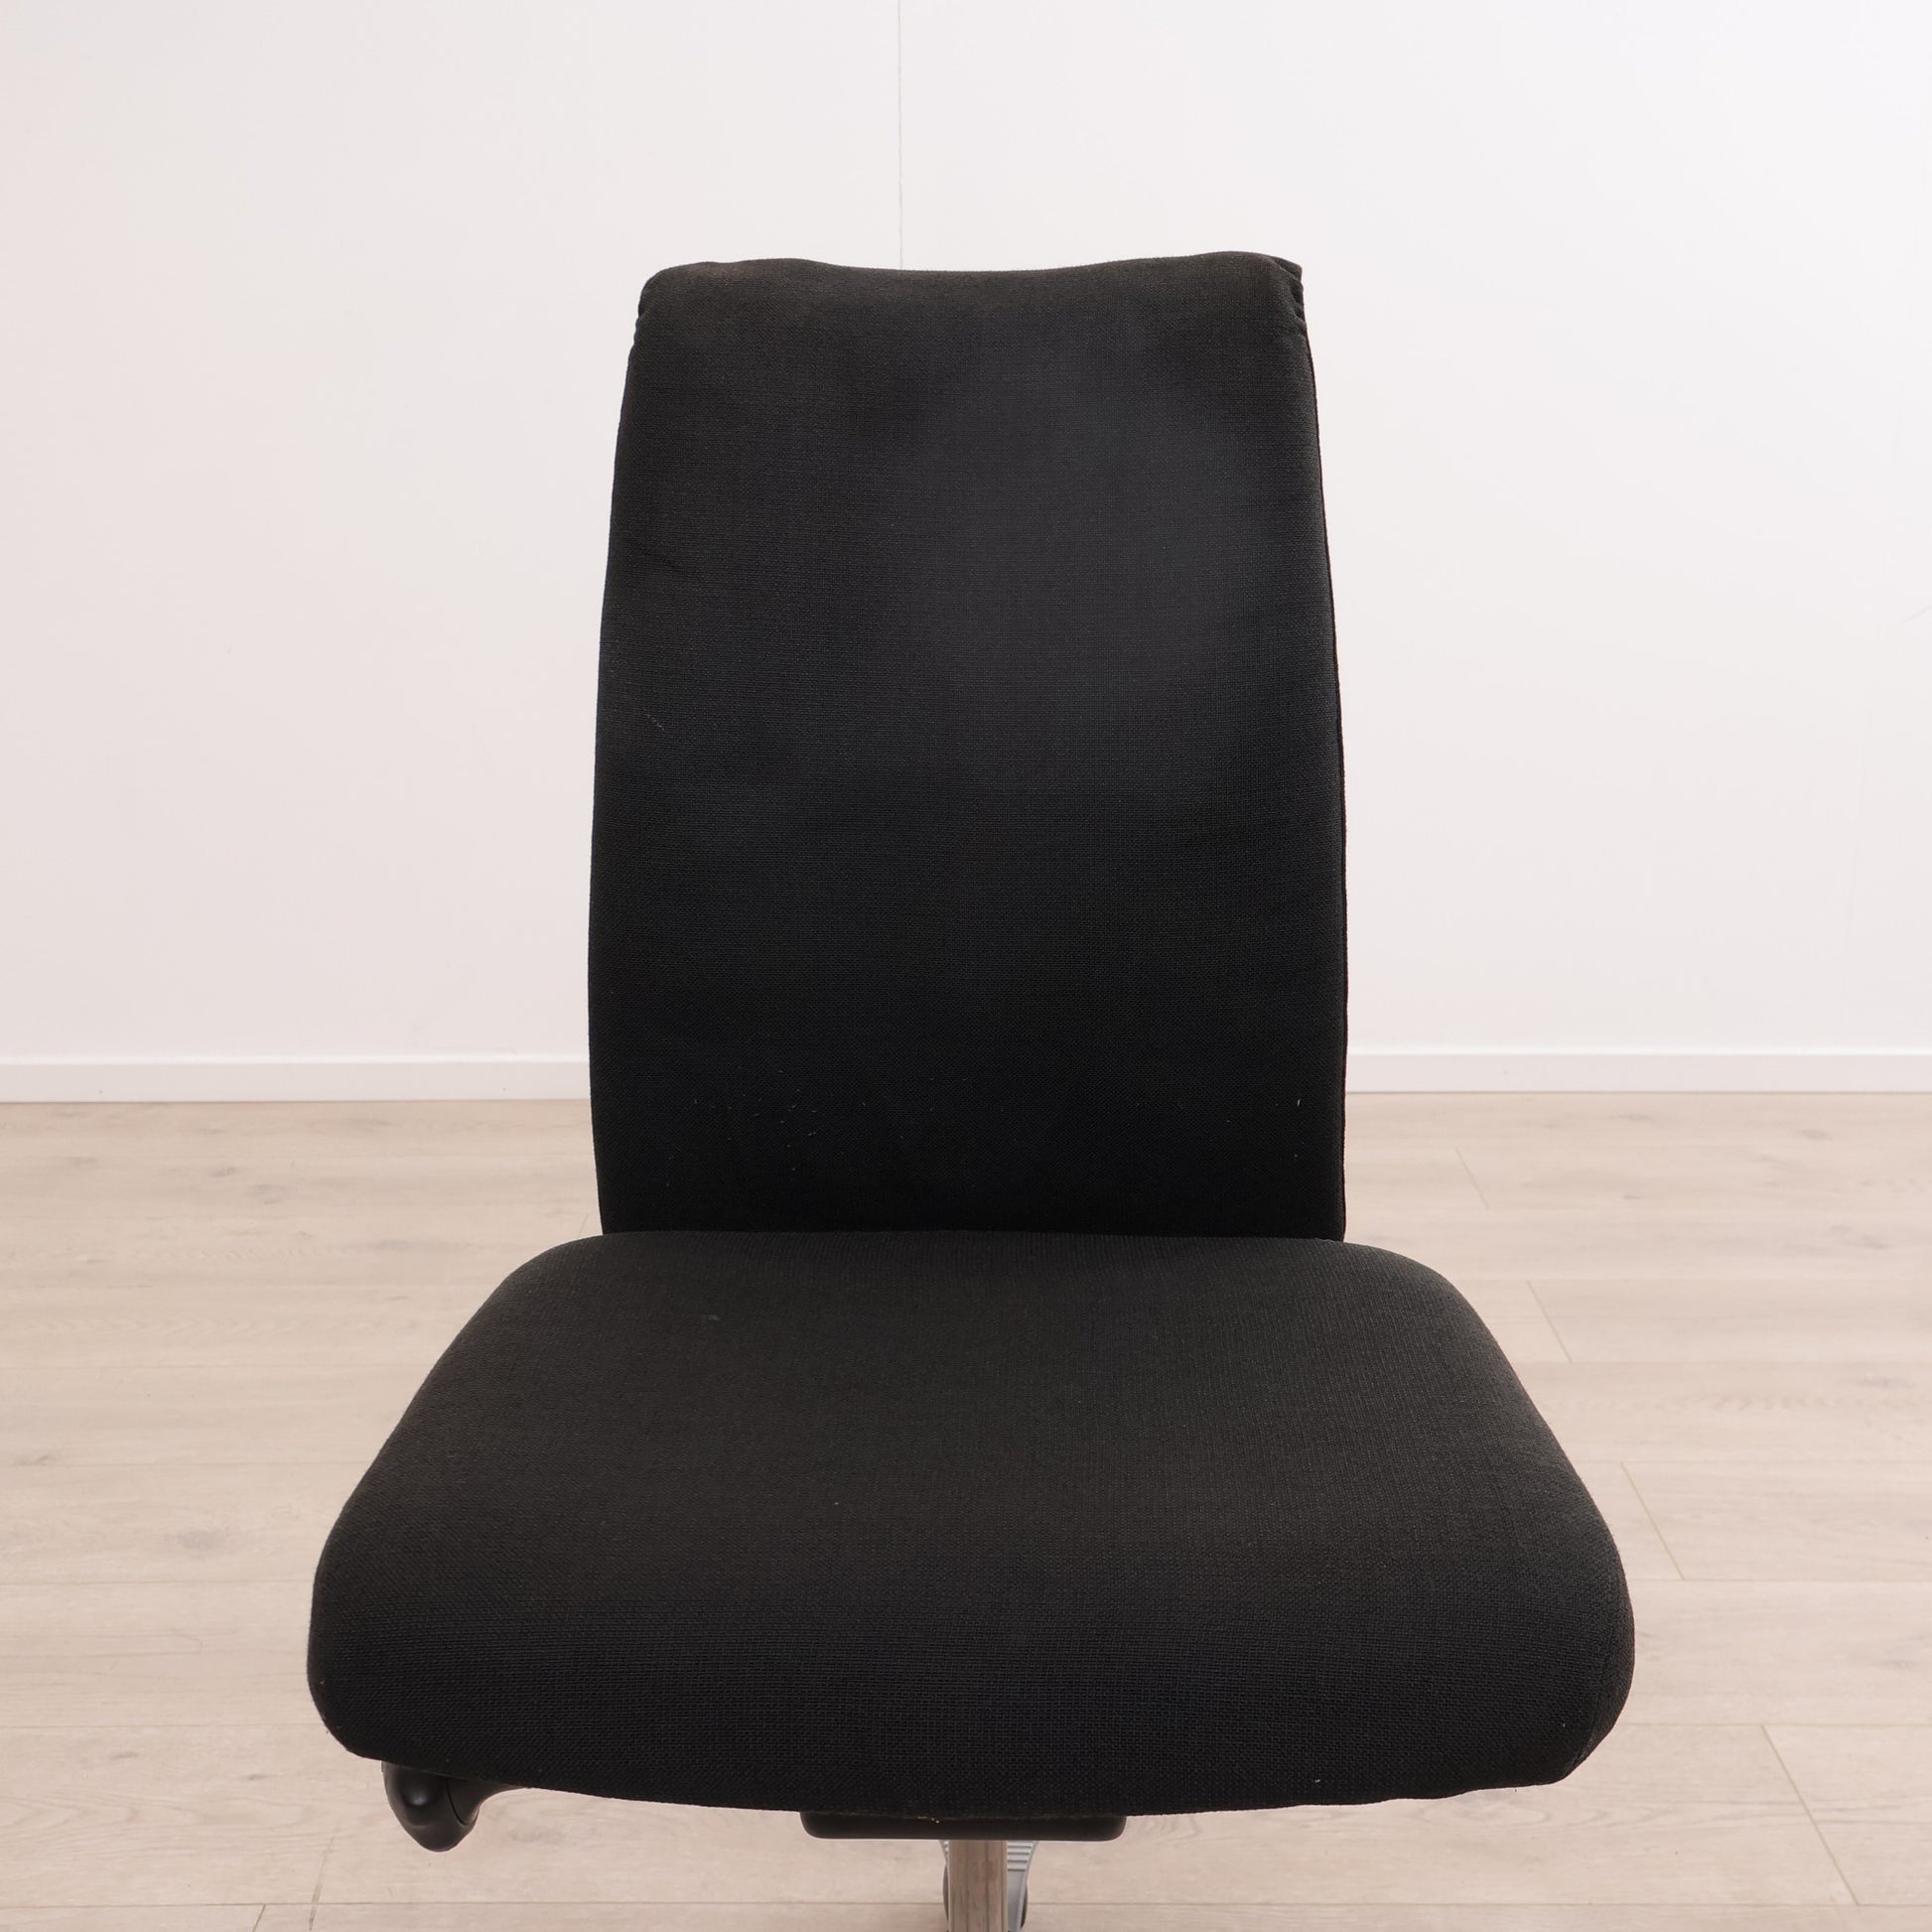 Nyrenset | Håg H05 (5500) kontorstol med grått understell